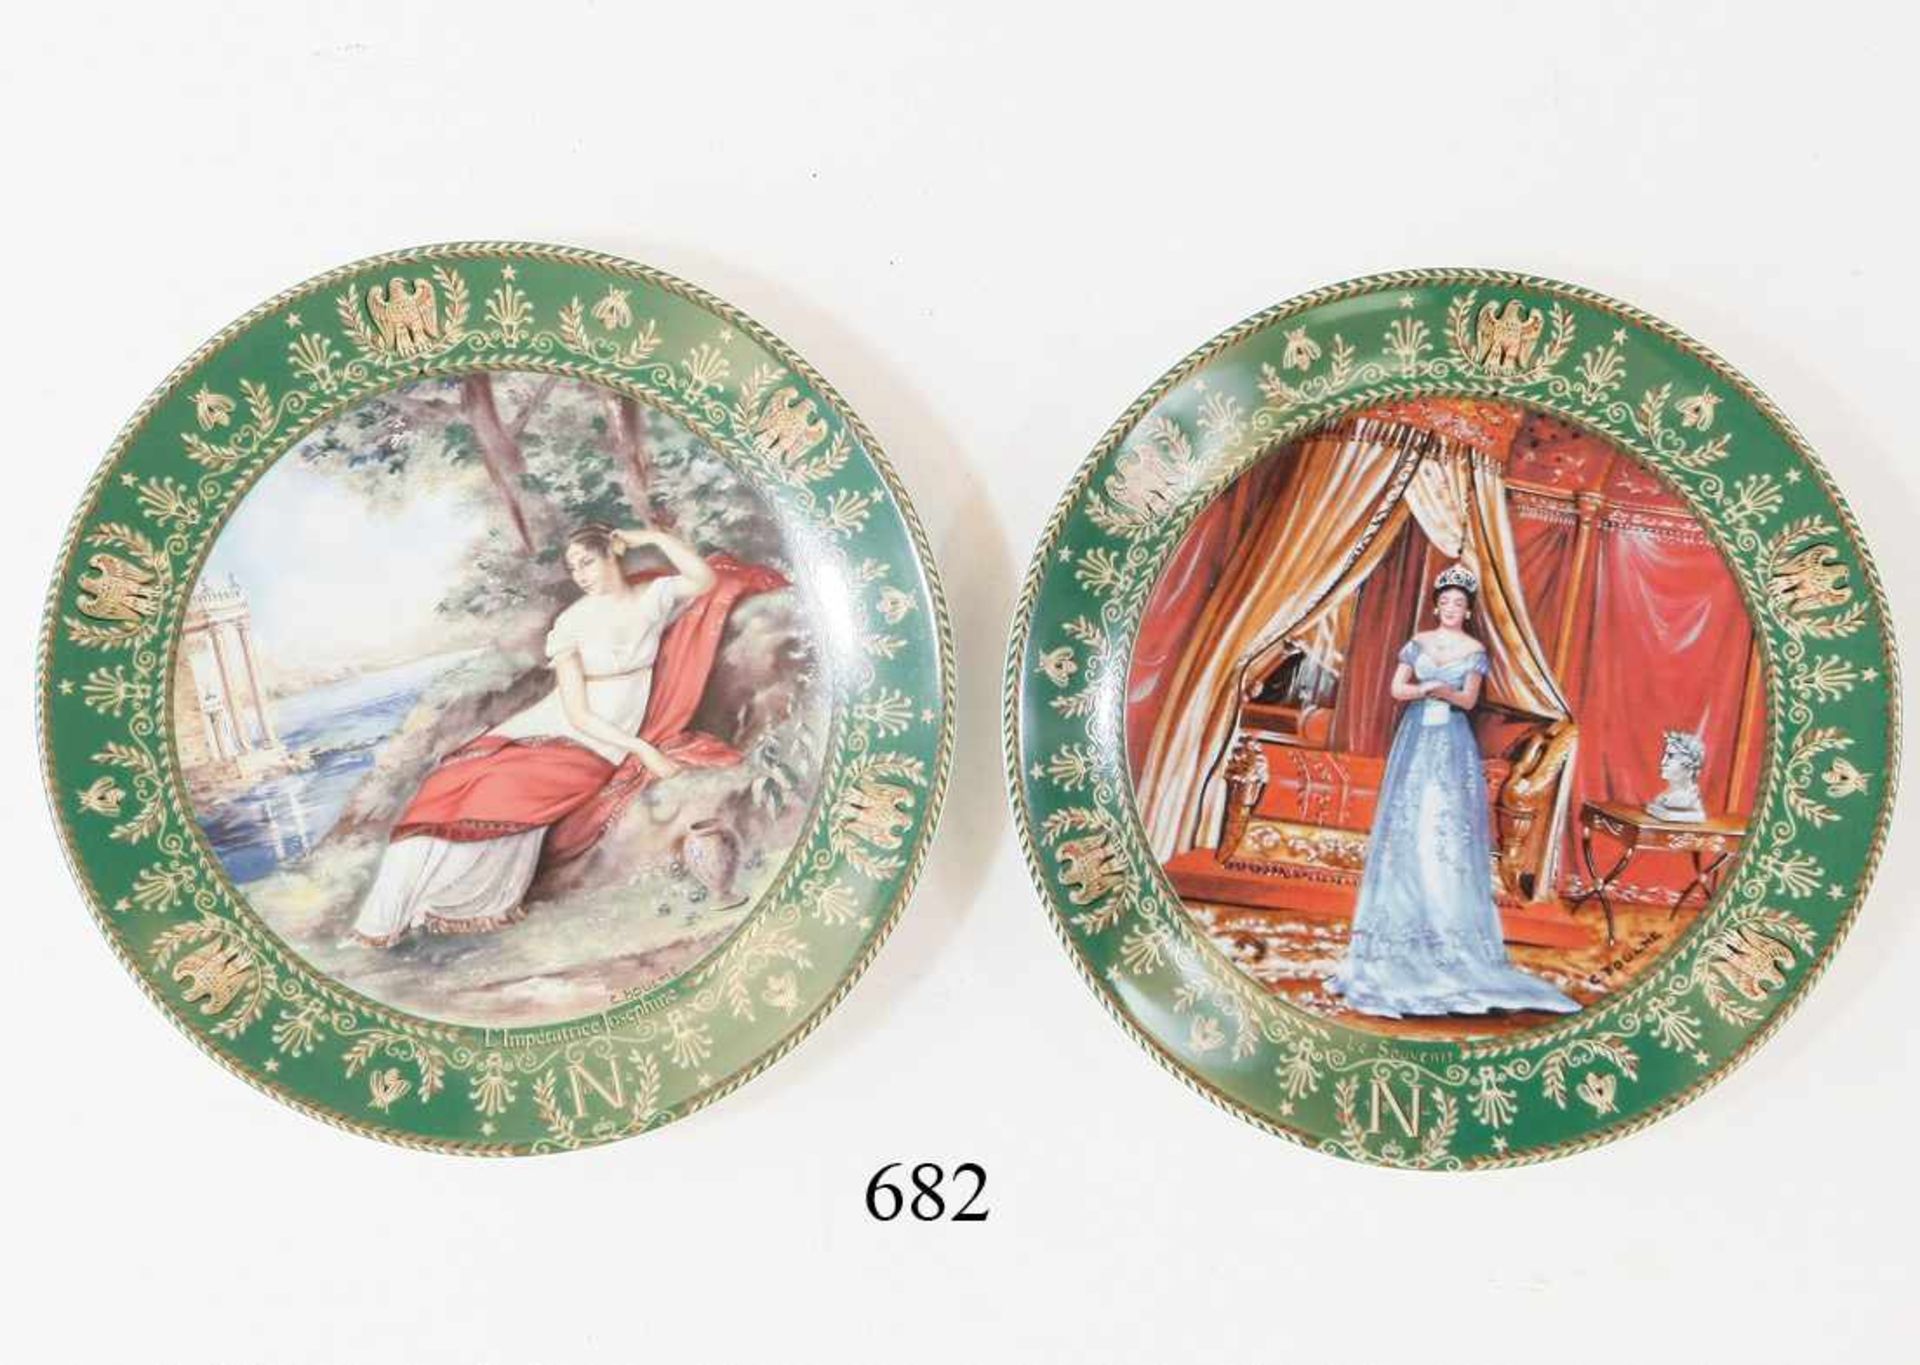 2 Porzellanteller "Josephine et Napoleon"Limitierte Sammlerteller aus dem Jahre 1983. Manufaktur